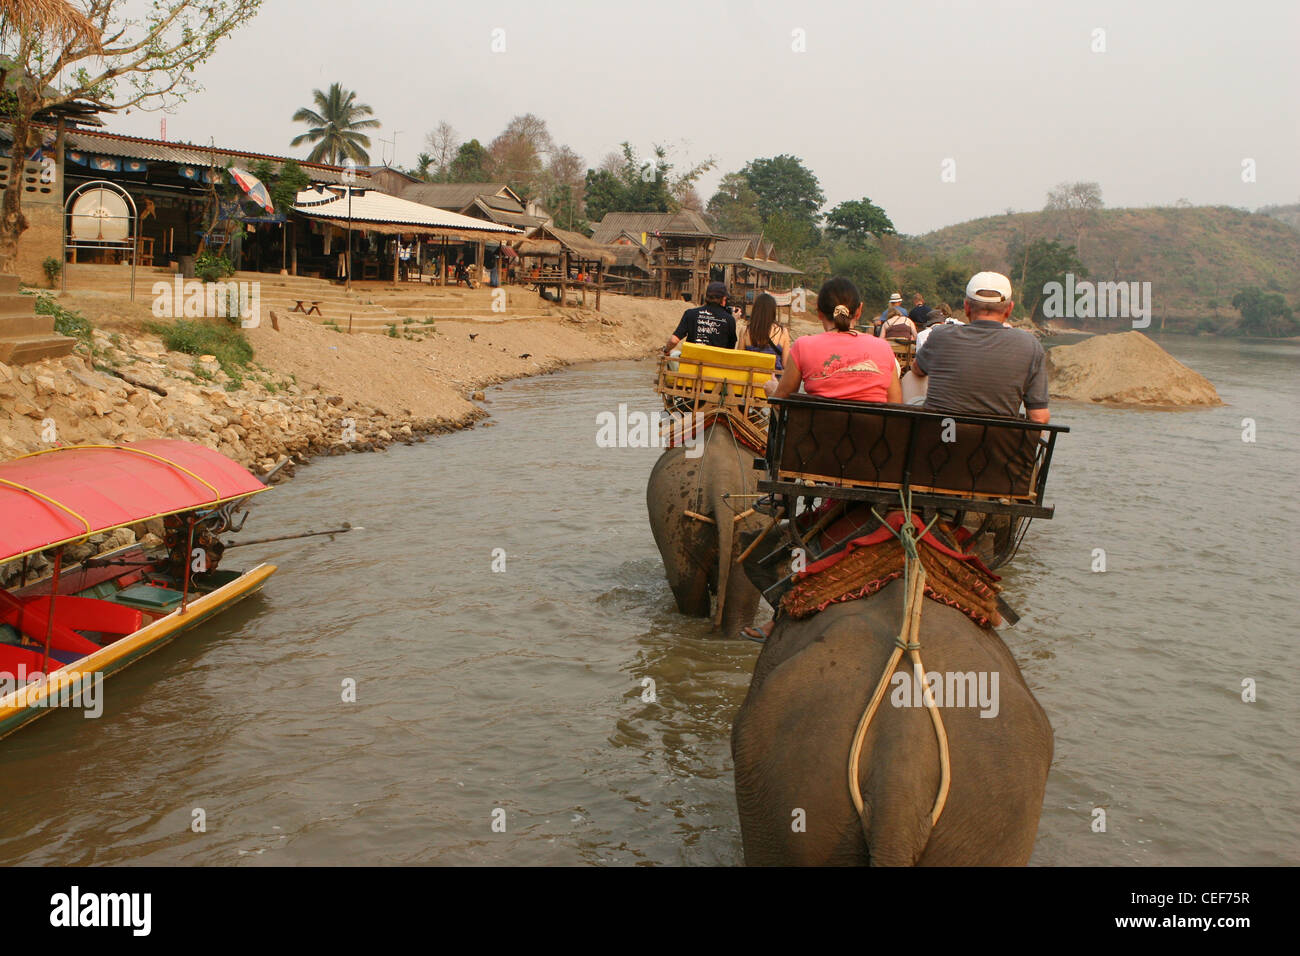 Les touristes appréciant un éléphant à travers la rivière Kok, Ruammit village, province de Chiang Rai en Thaïlande. Banque D'Images